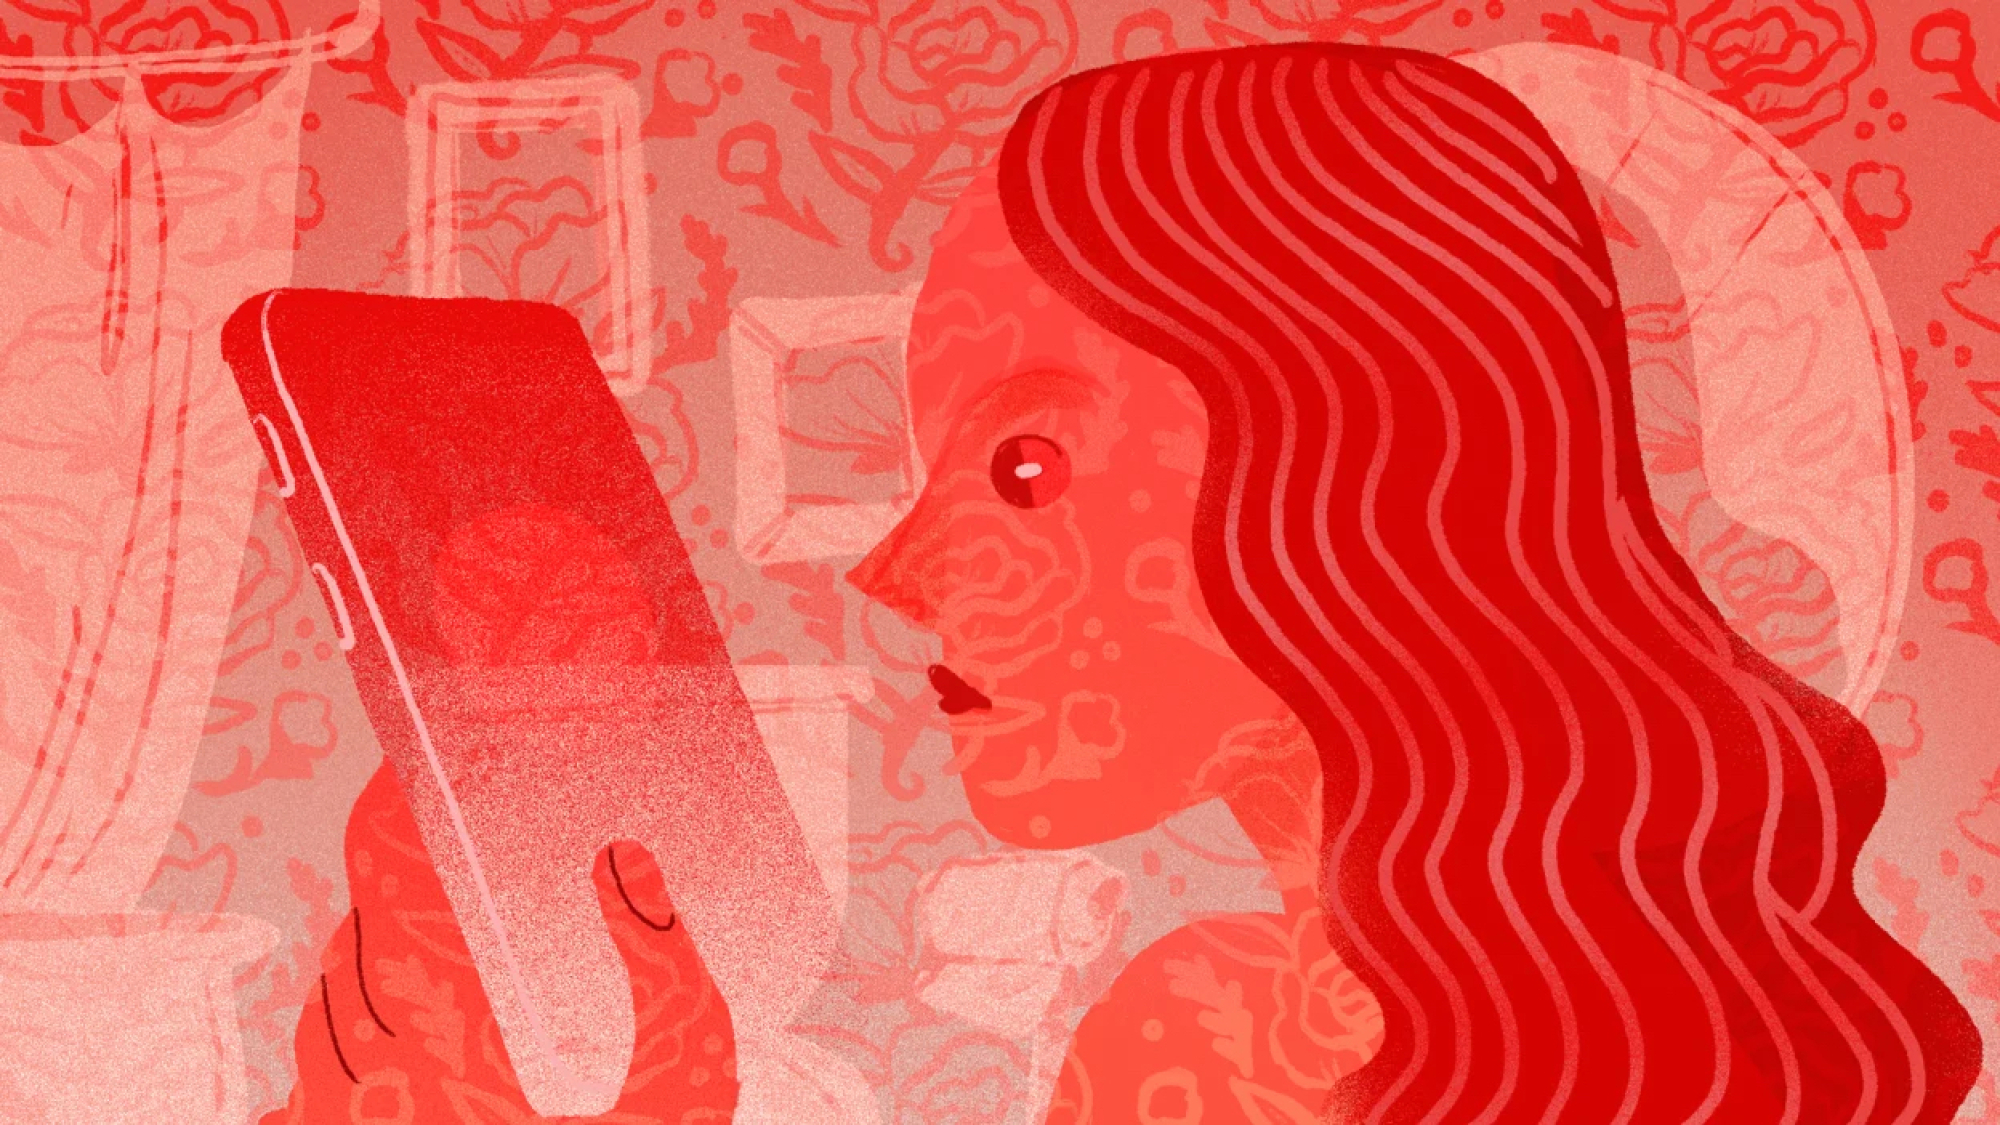 Tamamen kırmızı tonlarda, akıllı telefona bakan bir kadının illüstrasyonu.